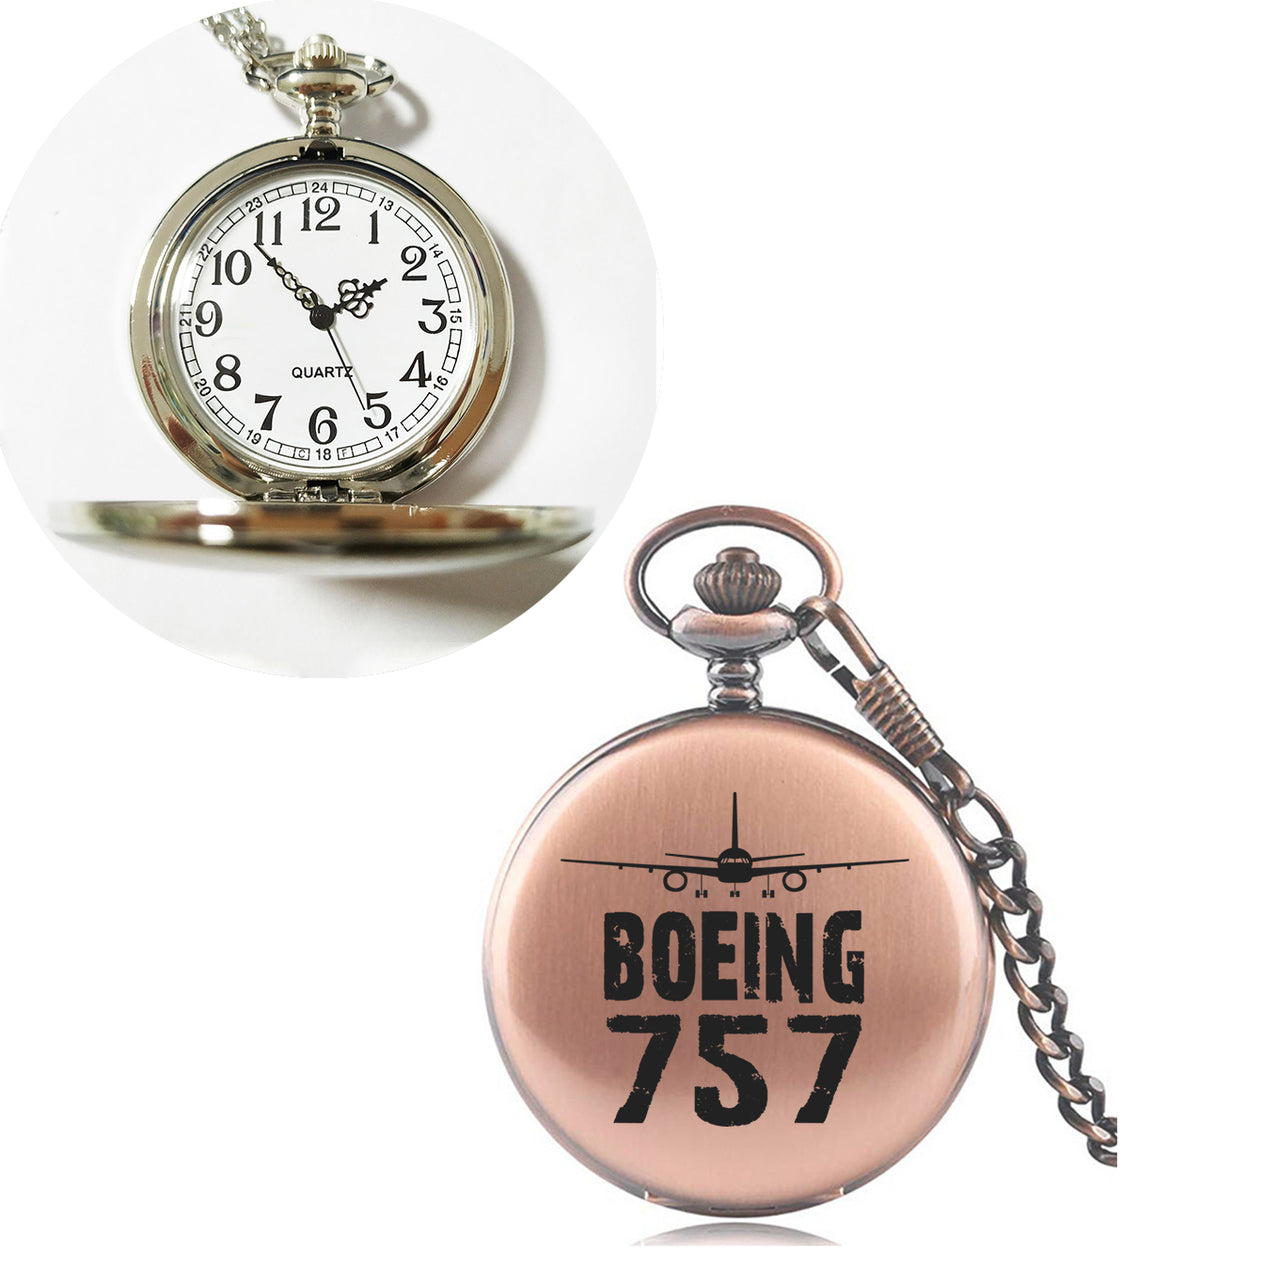 Boeing 757 & Plane Designed Pocket Watches